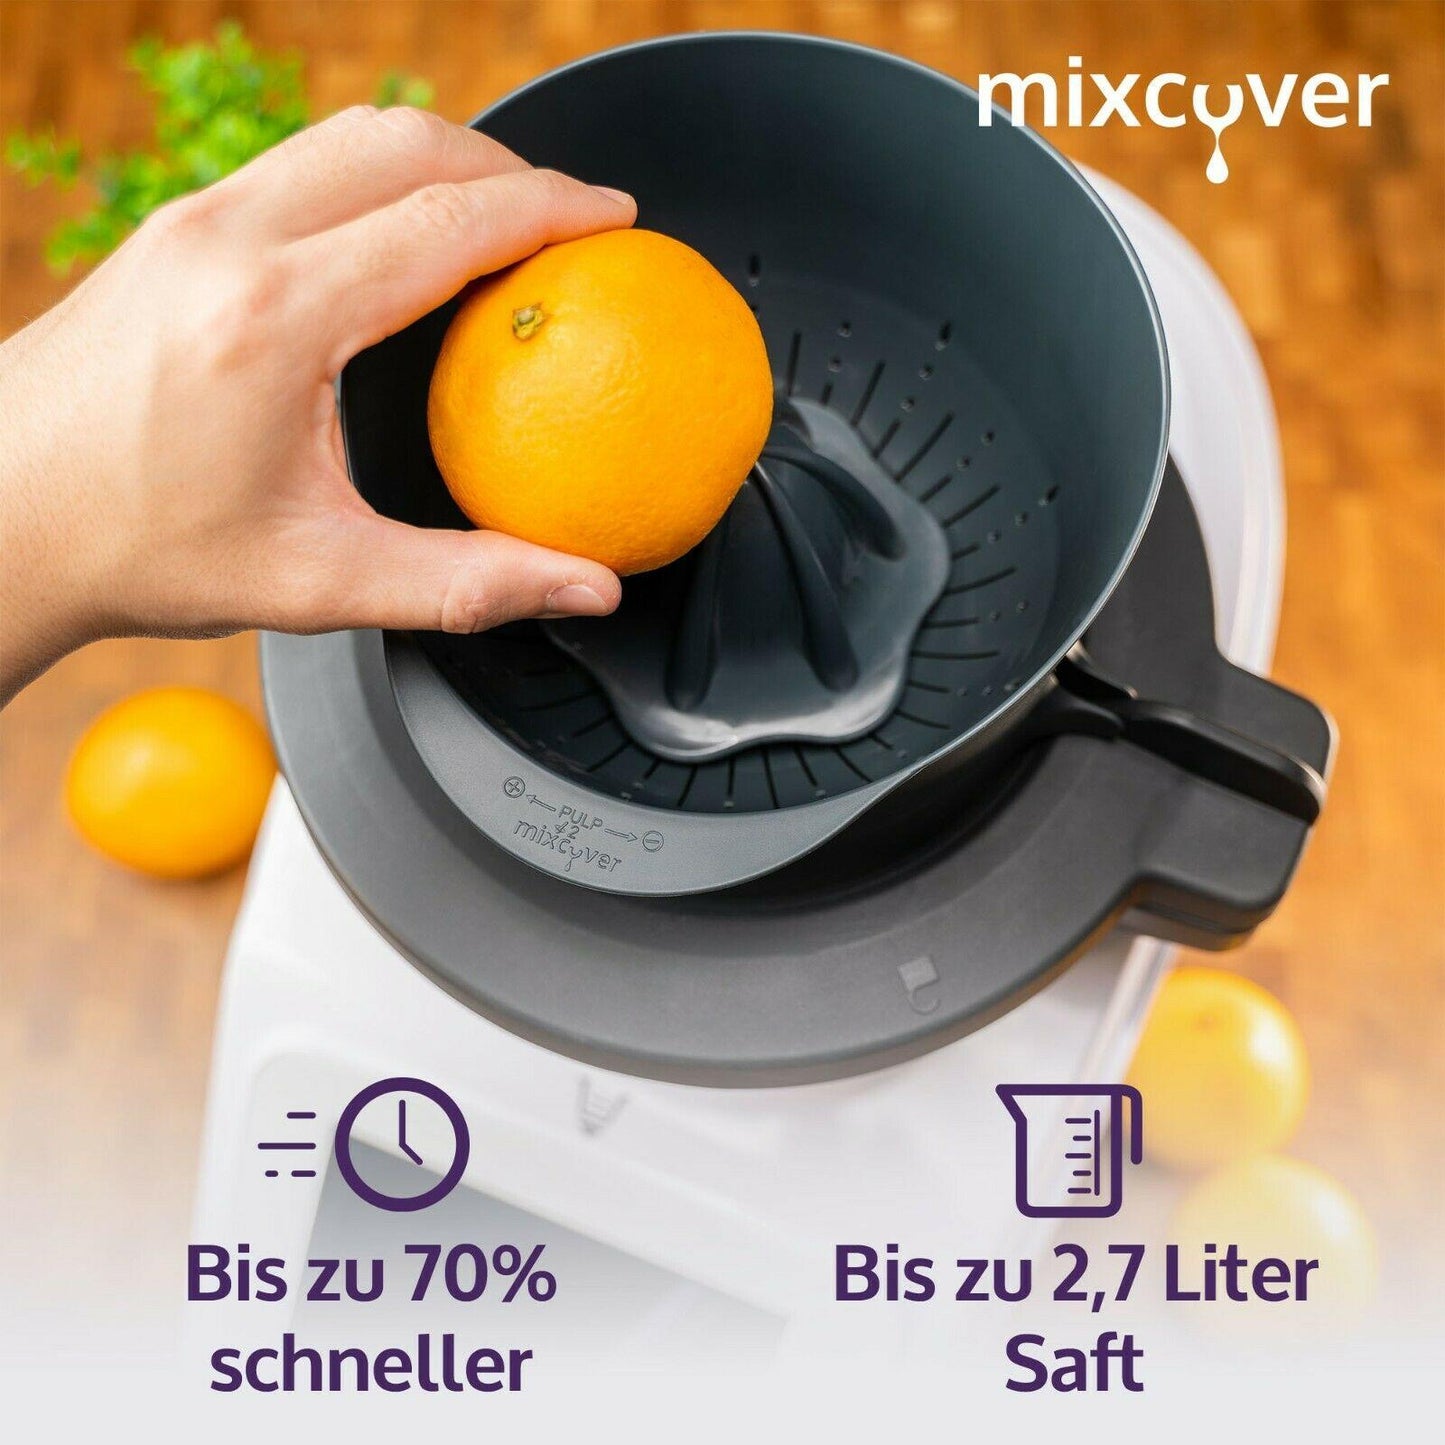 mixcover Juice Press / Citrus Press pour Monsieur Cuisine Connect Agracer